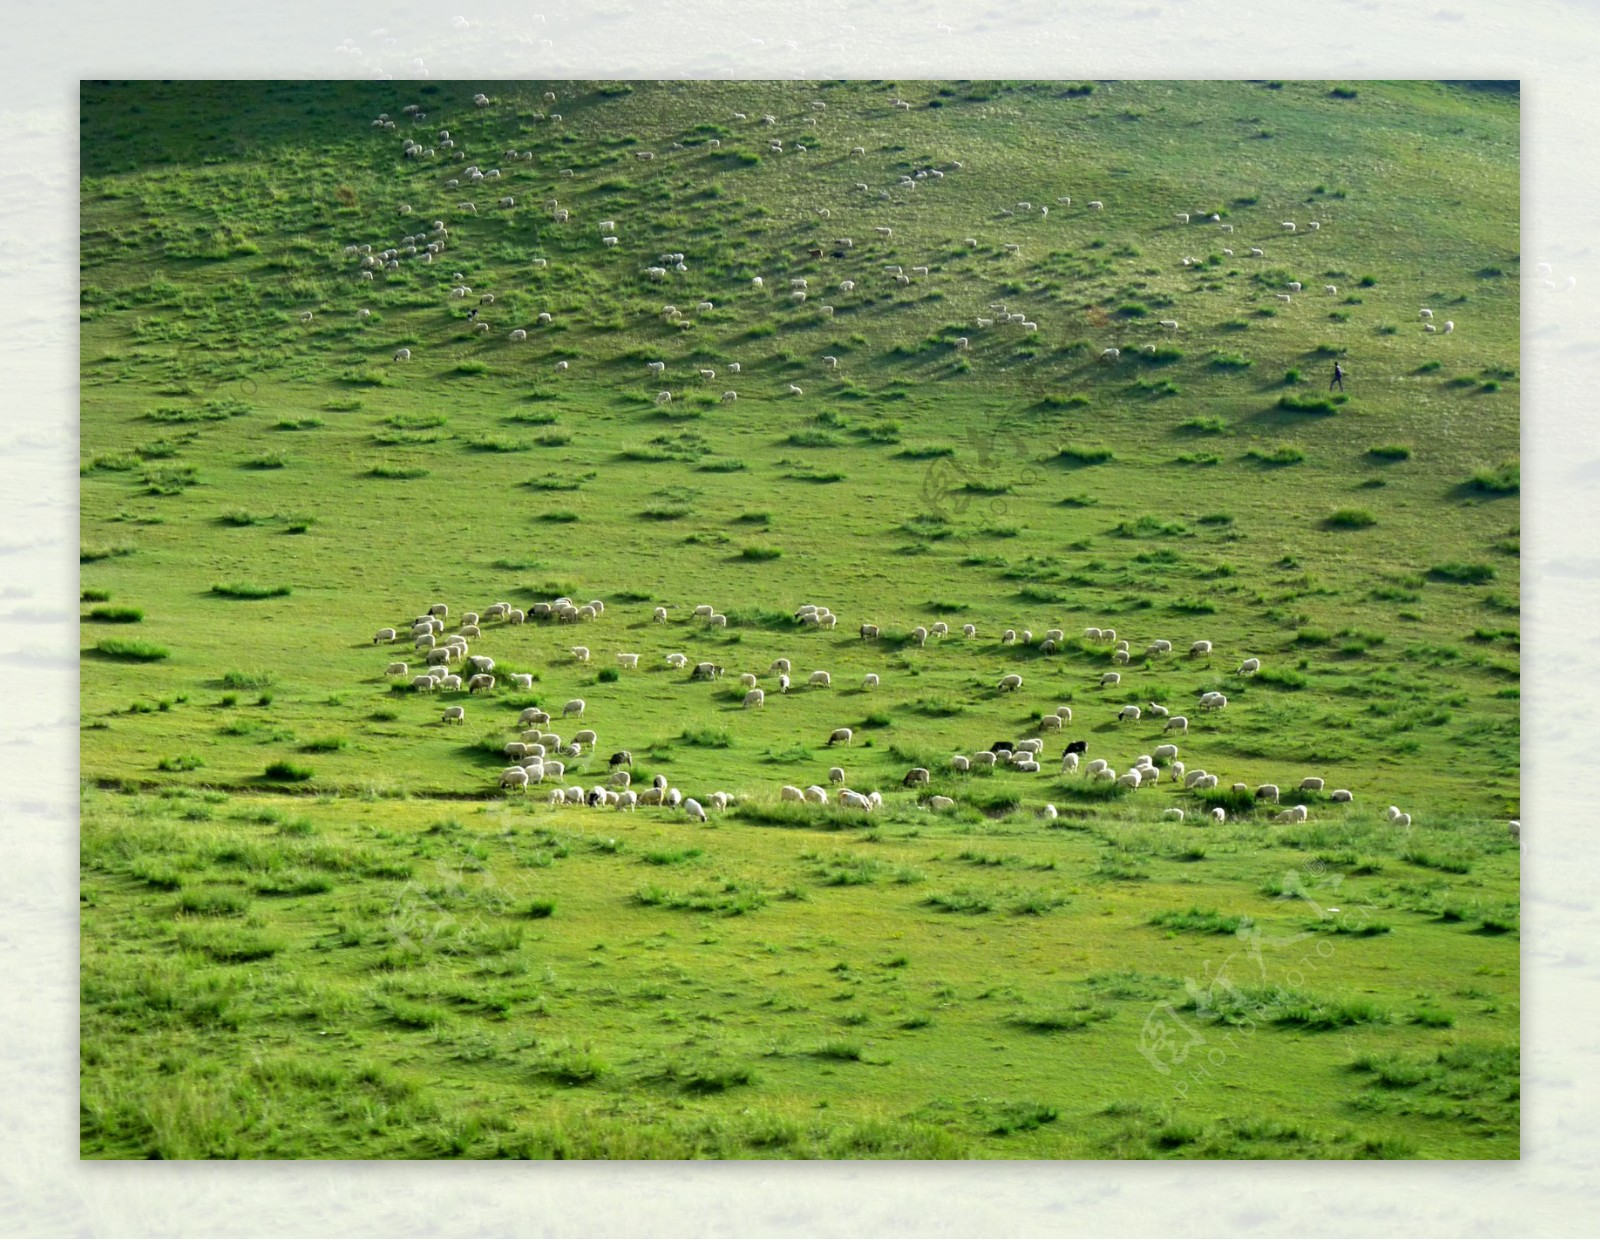 草原上的羊群